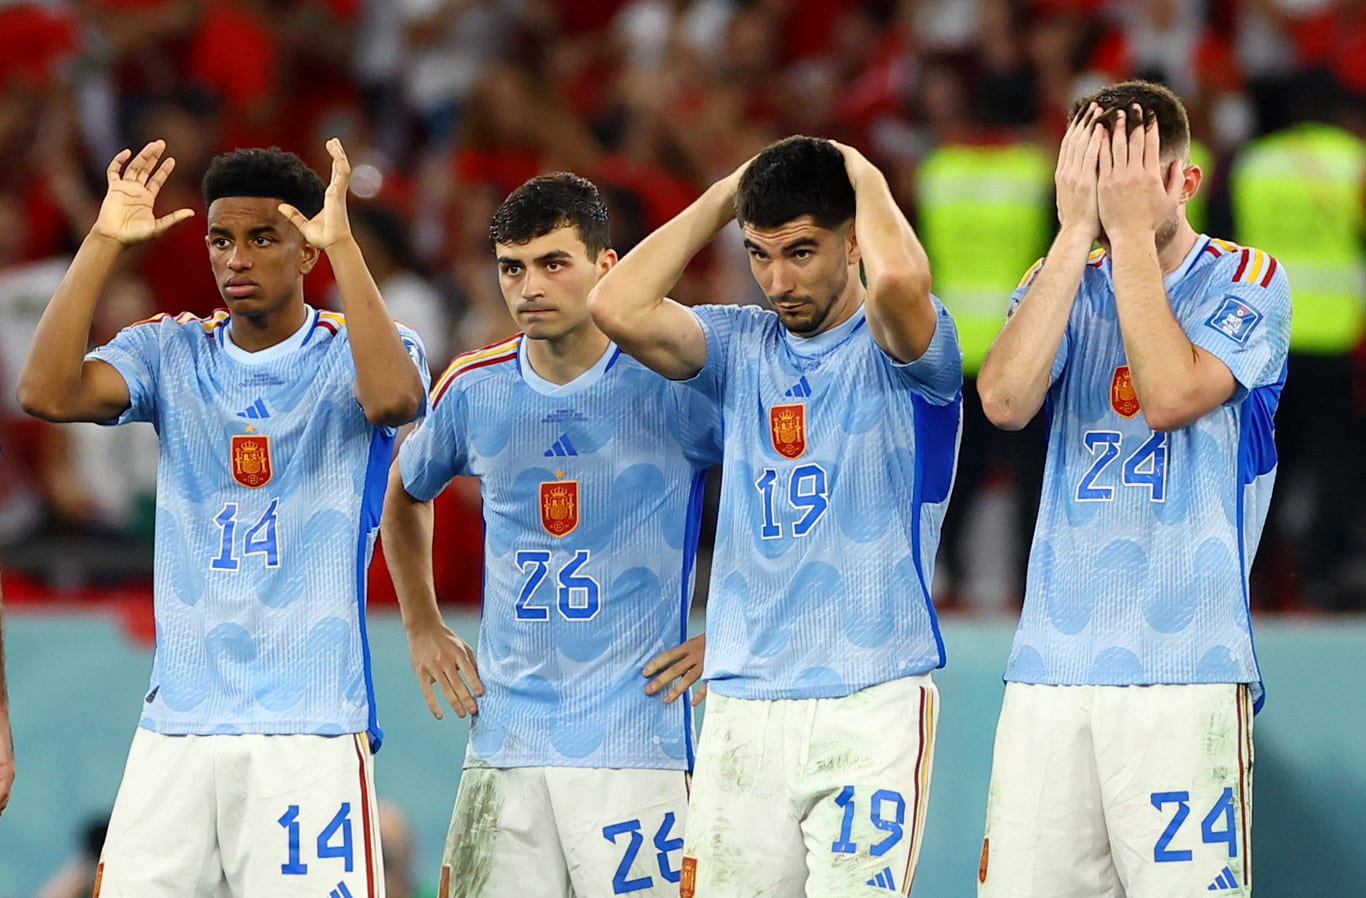 שחקני נבחרת ספרד בהלם אחרי ההדחה, מונדיאל קטאר 2022